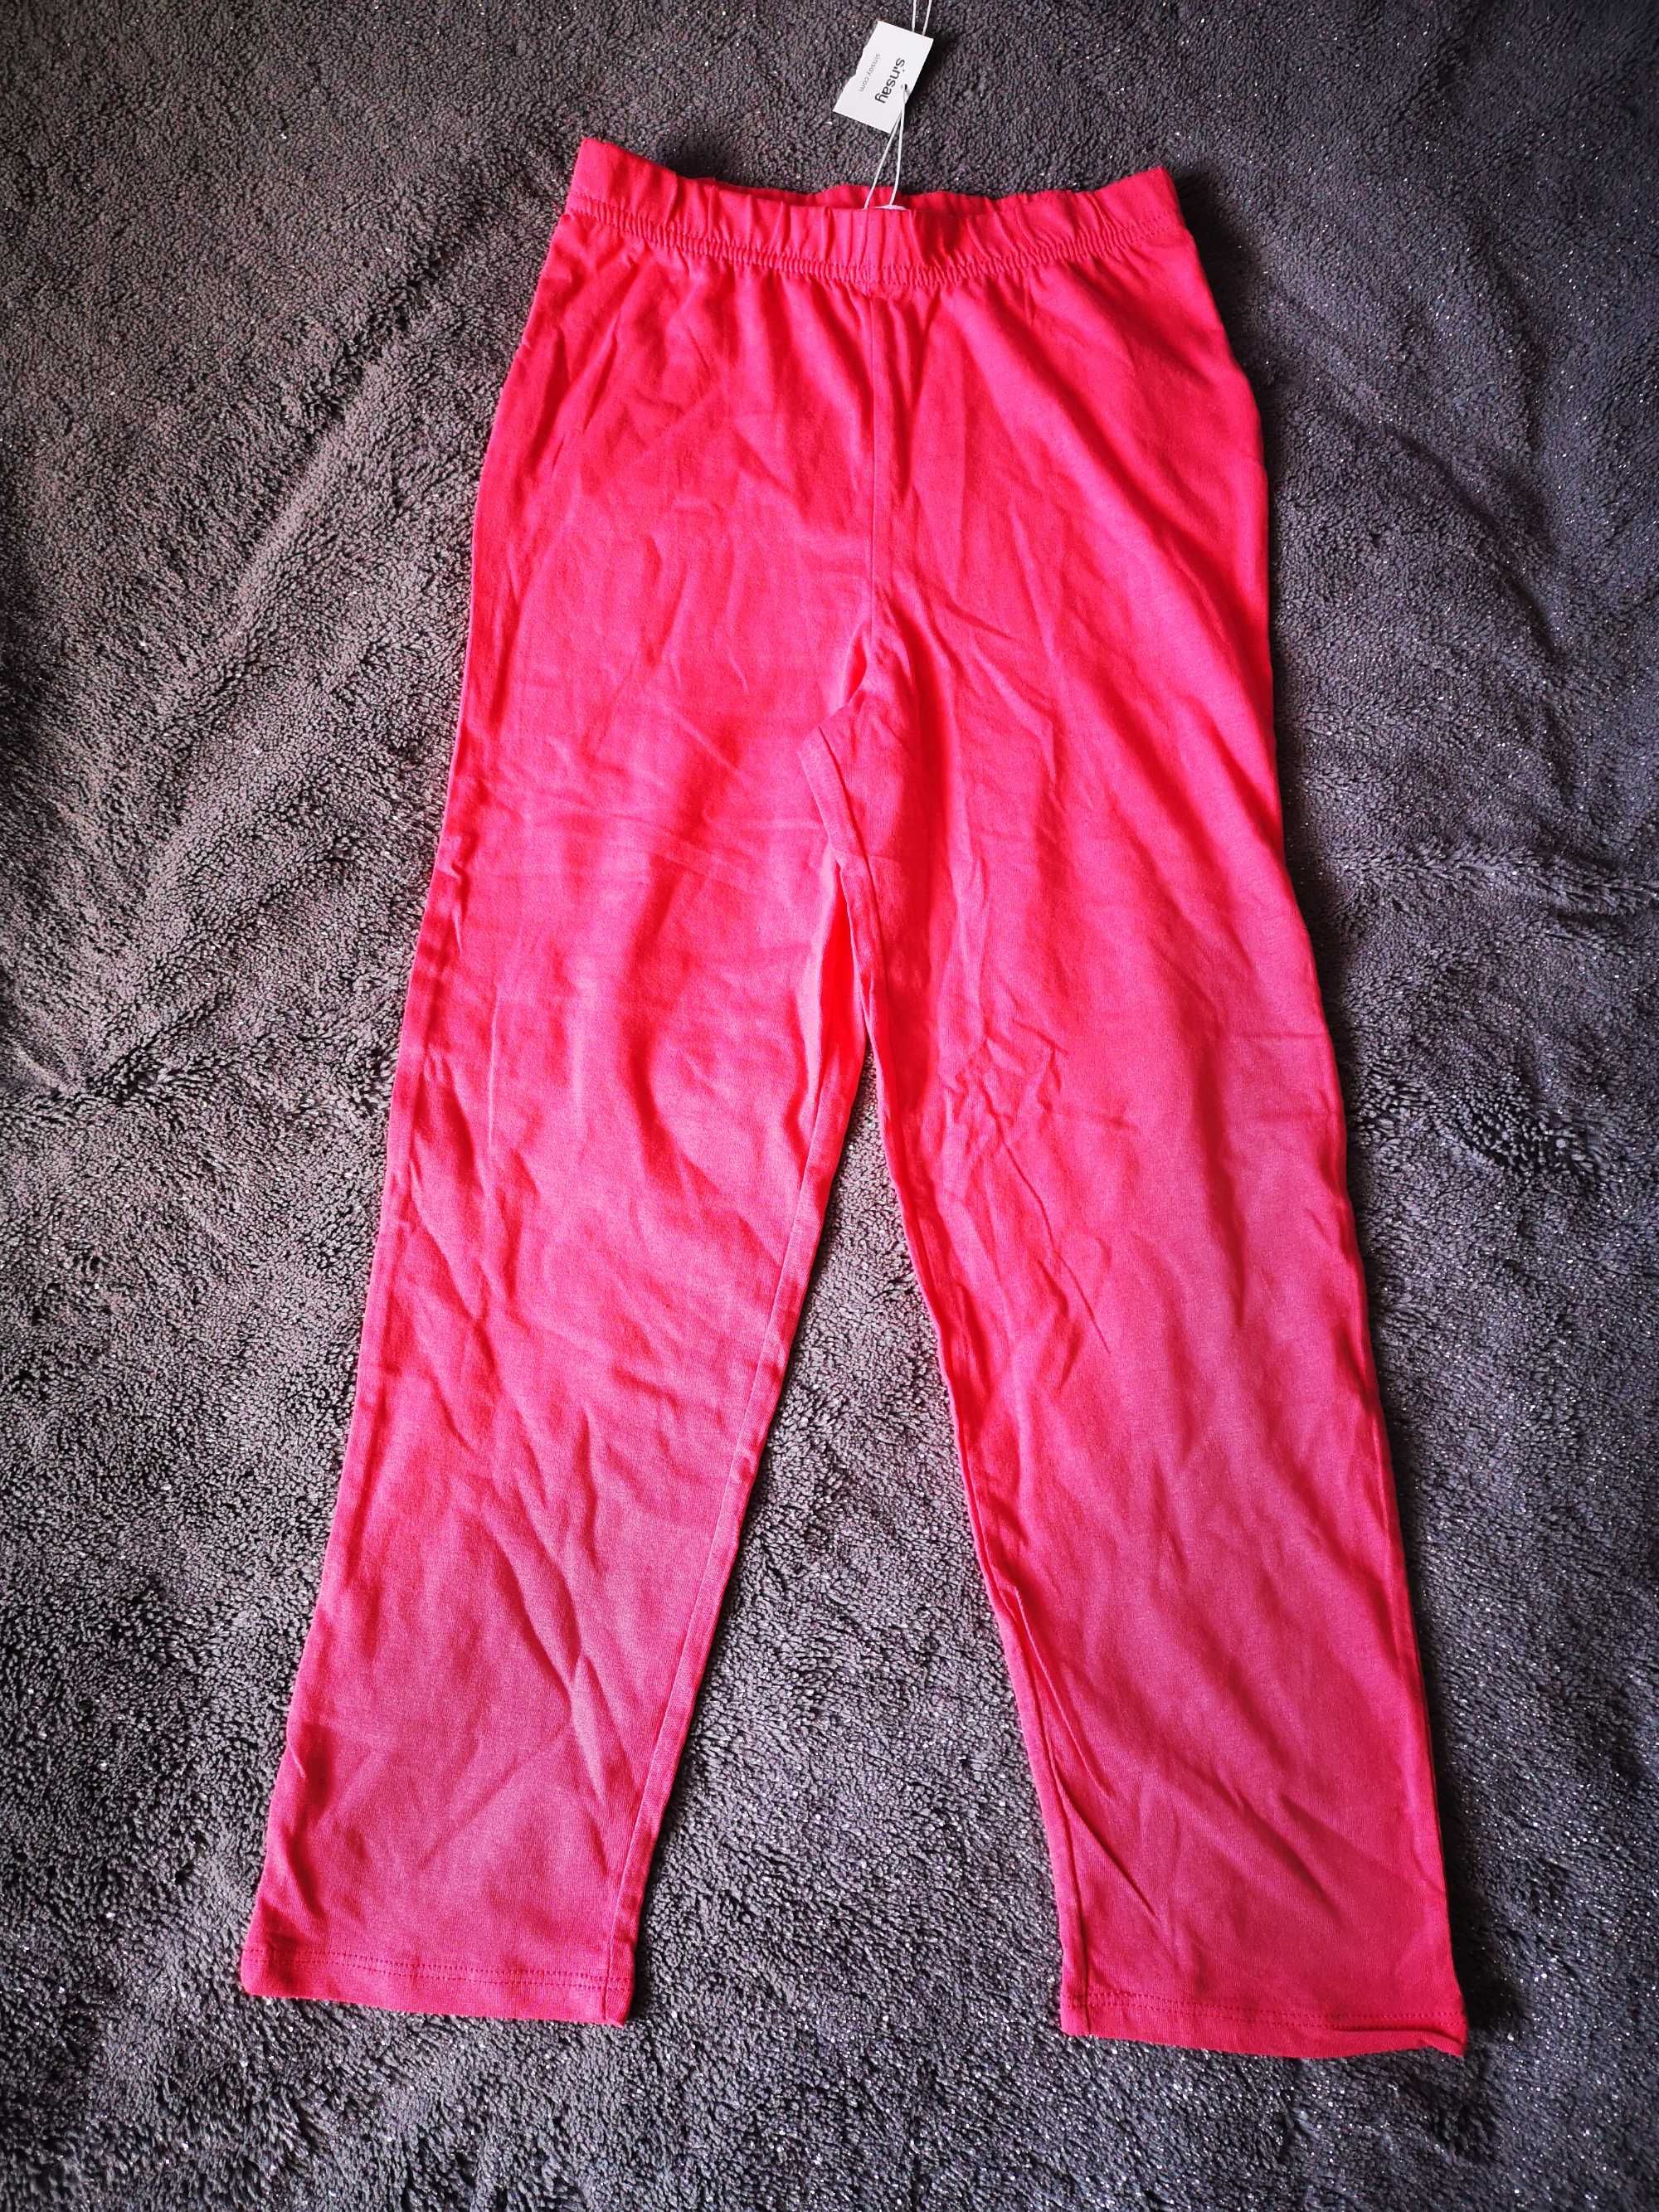 Piżama komplet krótki rękaw długie spodnie r. 128 Panda Nowa